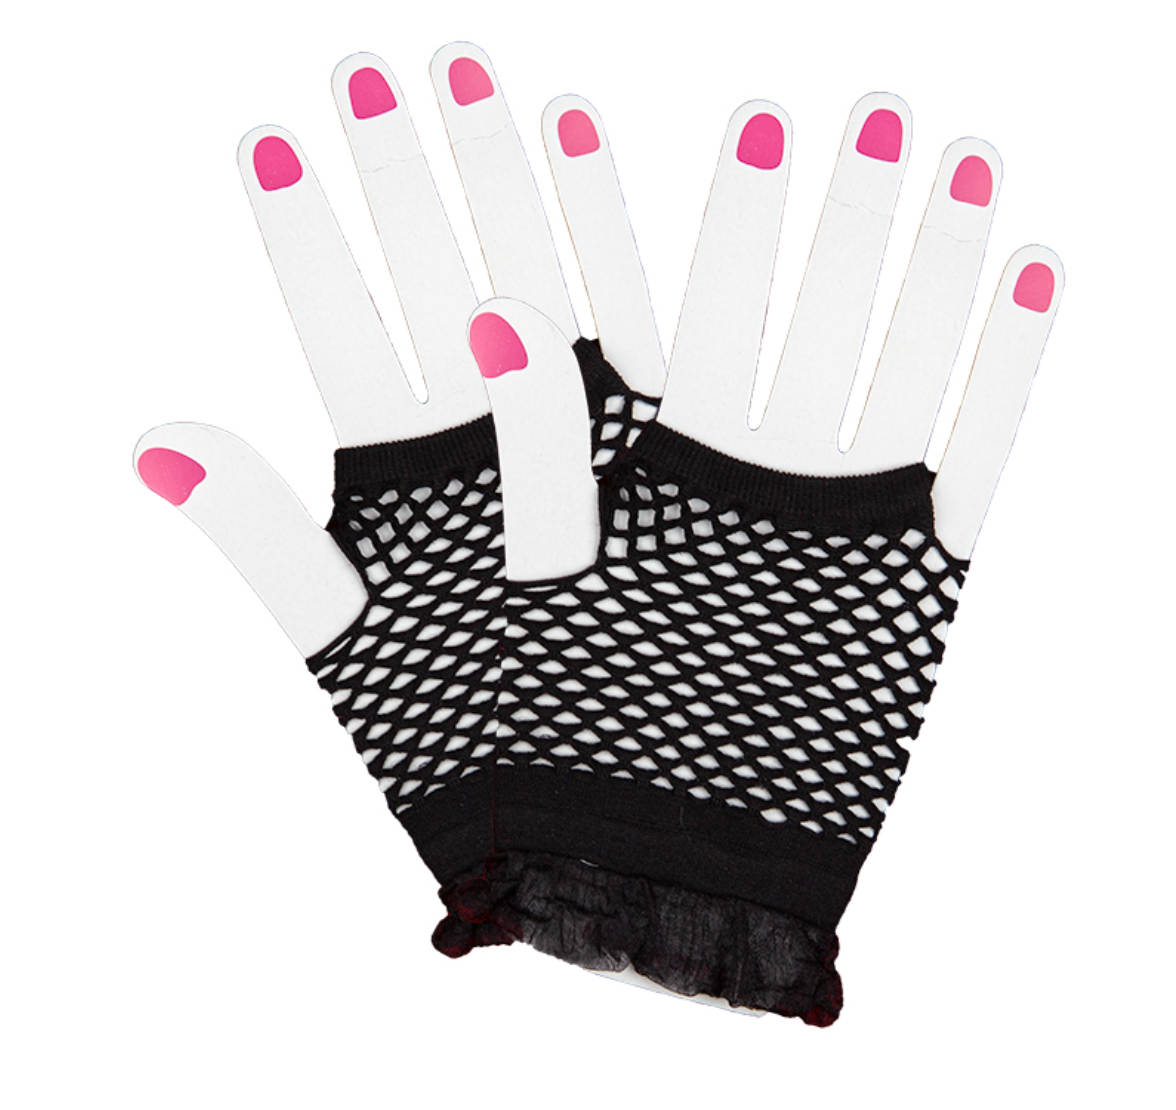 Neon Fishnet Gloves - Black